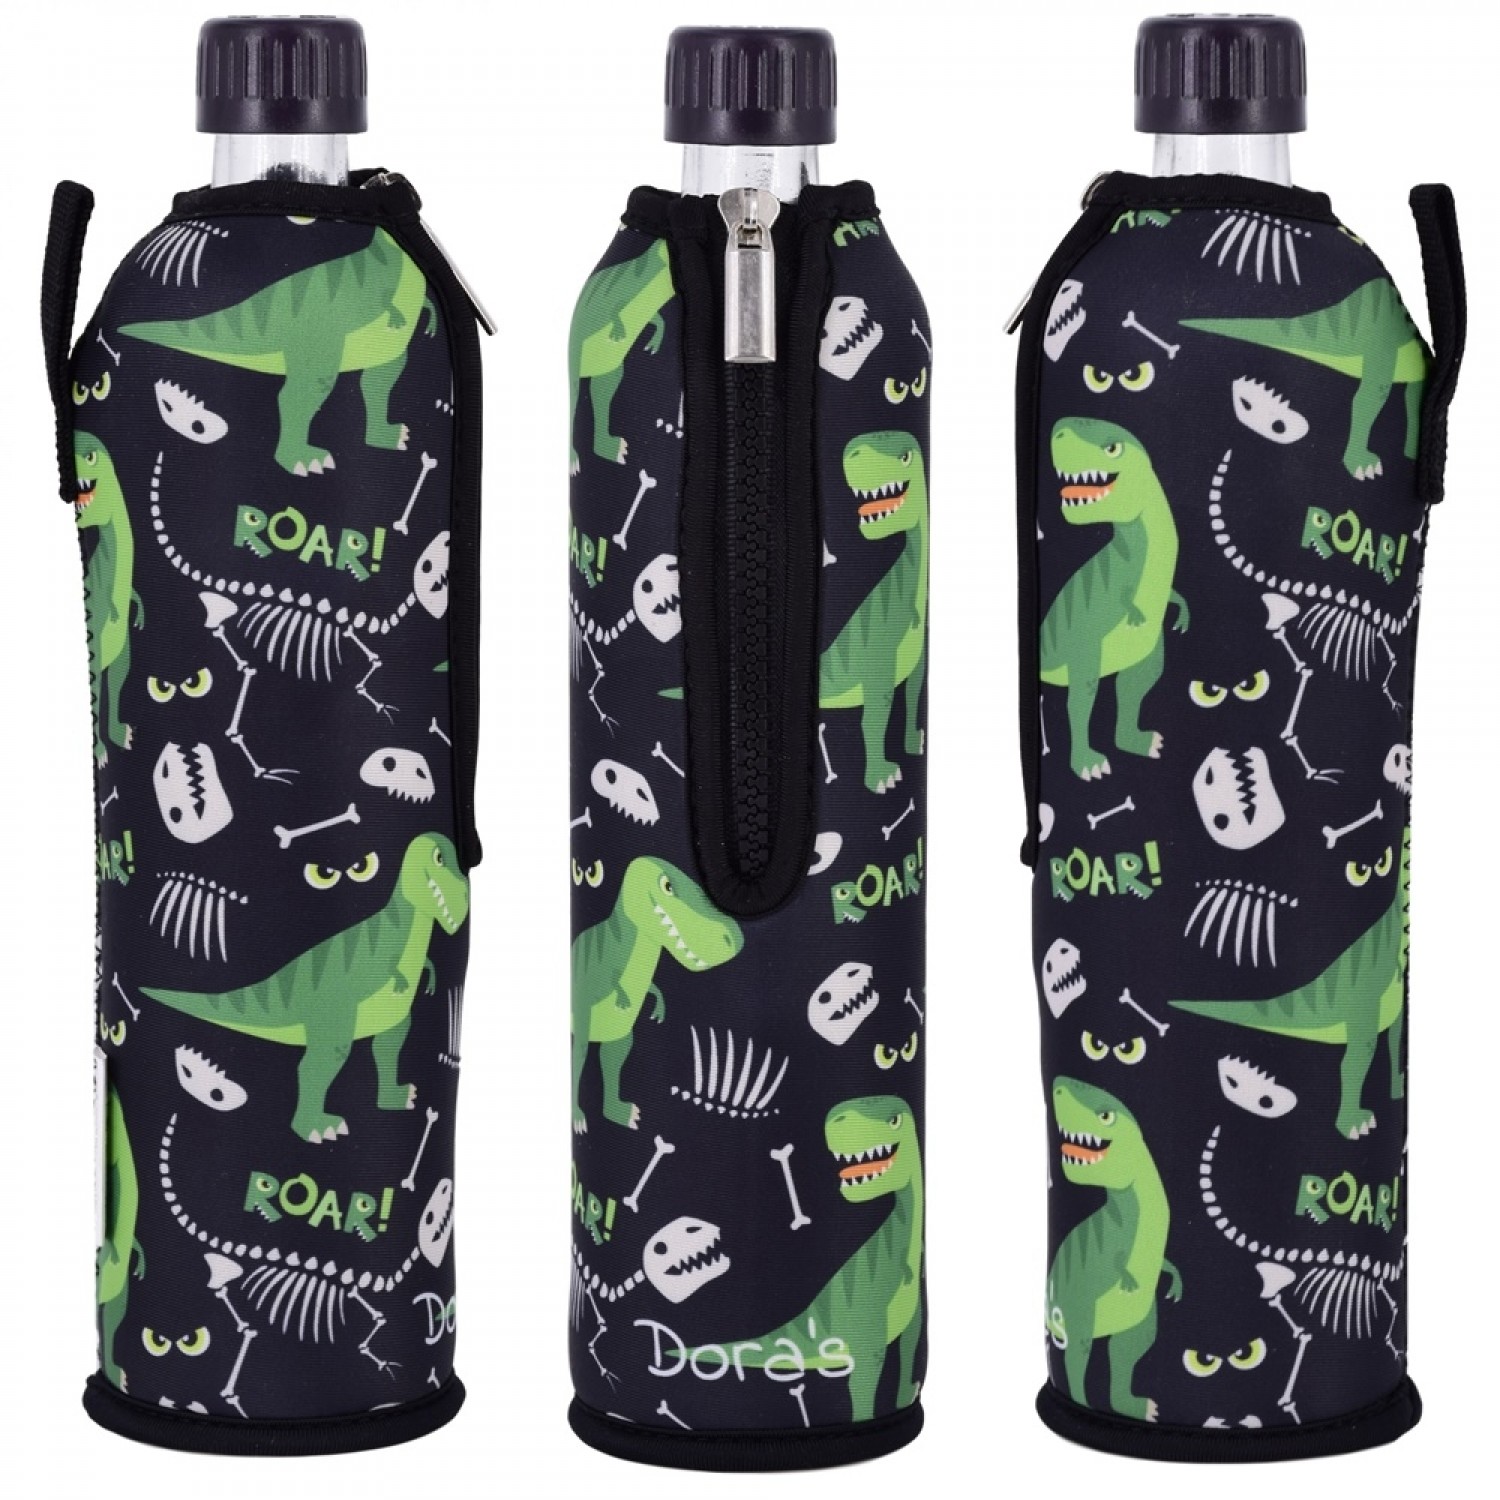 DINO reusable water bottle in neoprene sleeve | Dora’s